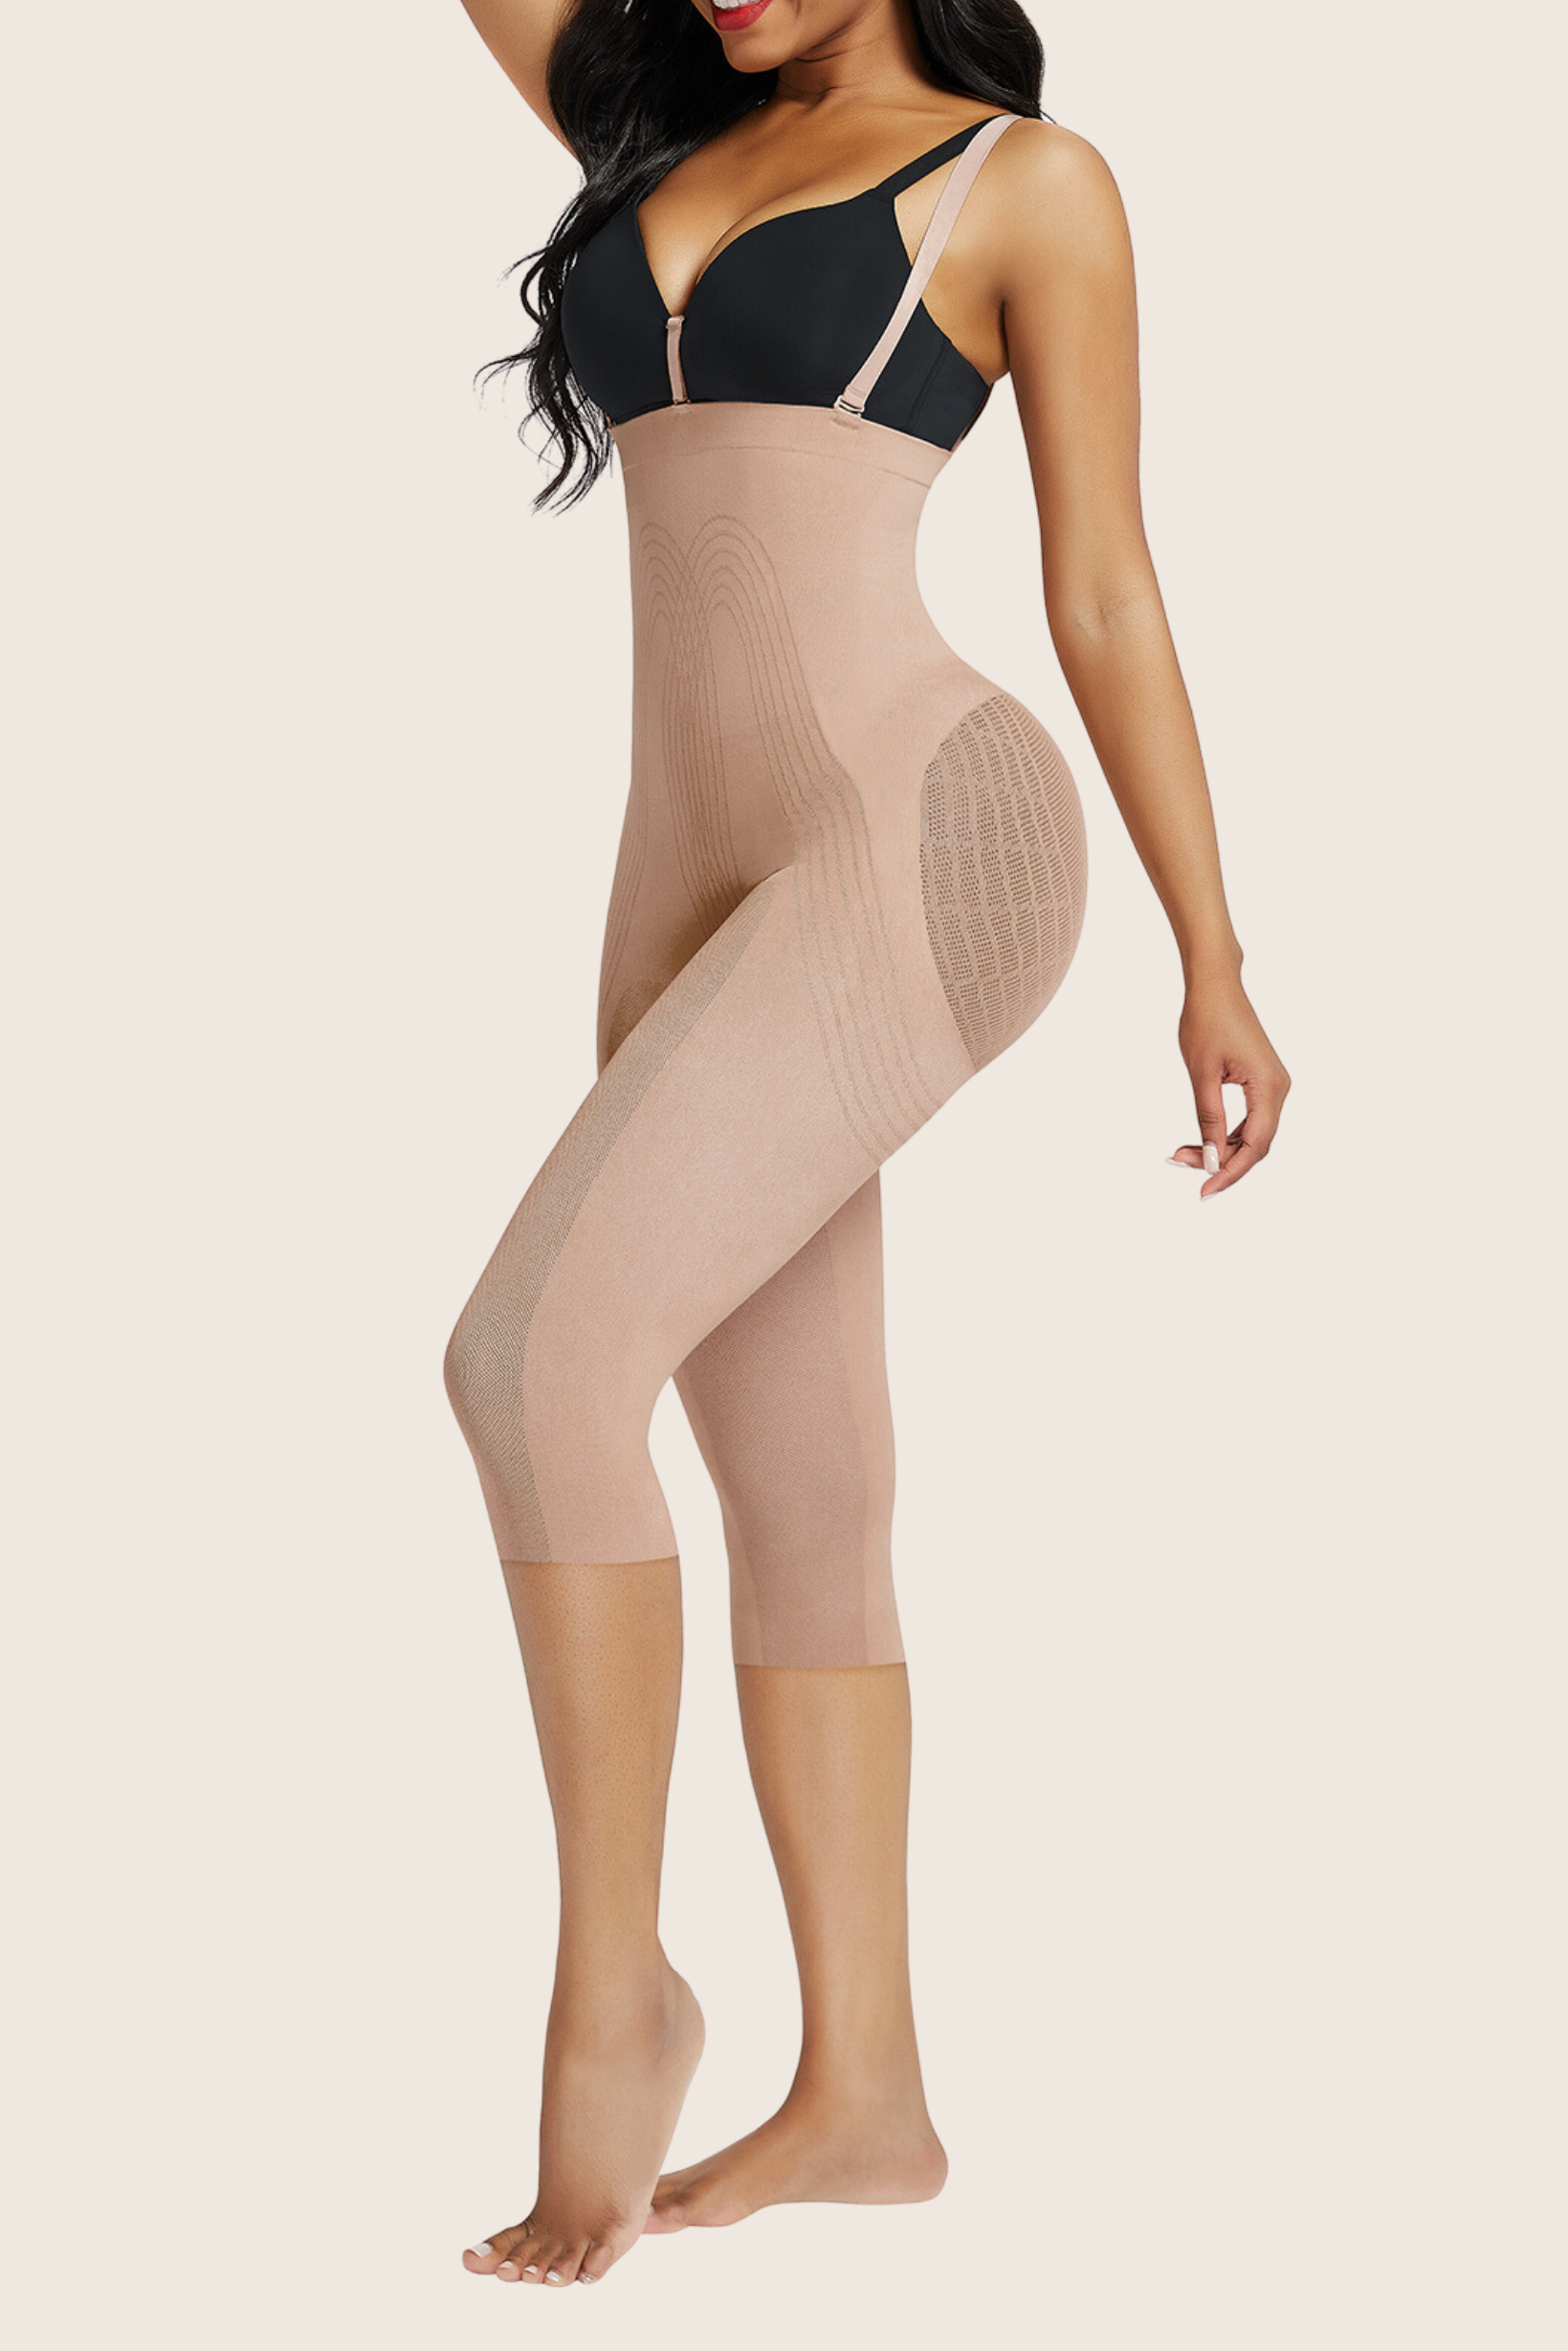 Detachable Body Shaper Leggings - Women's Shapewear - Modelle